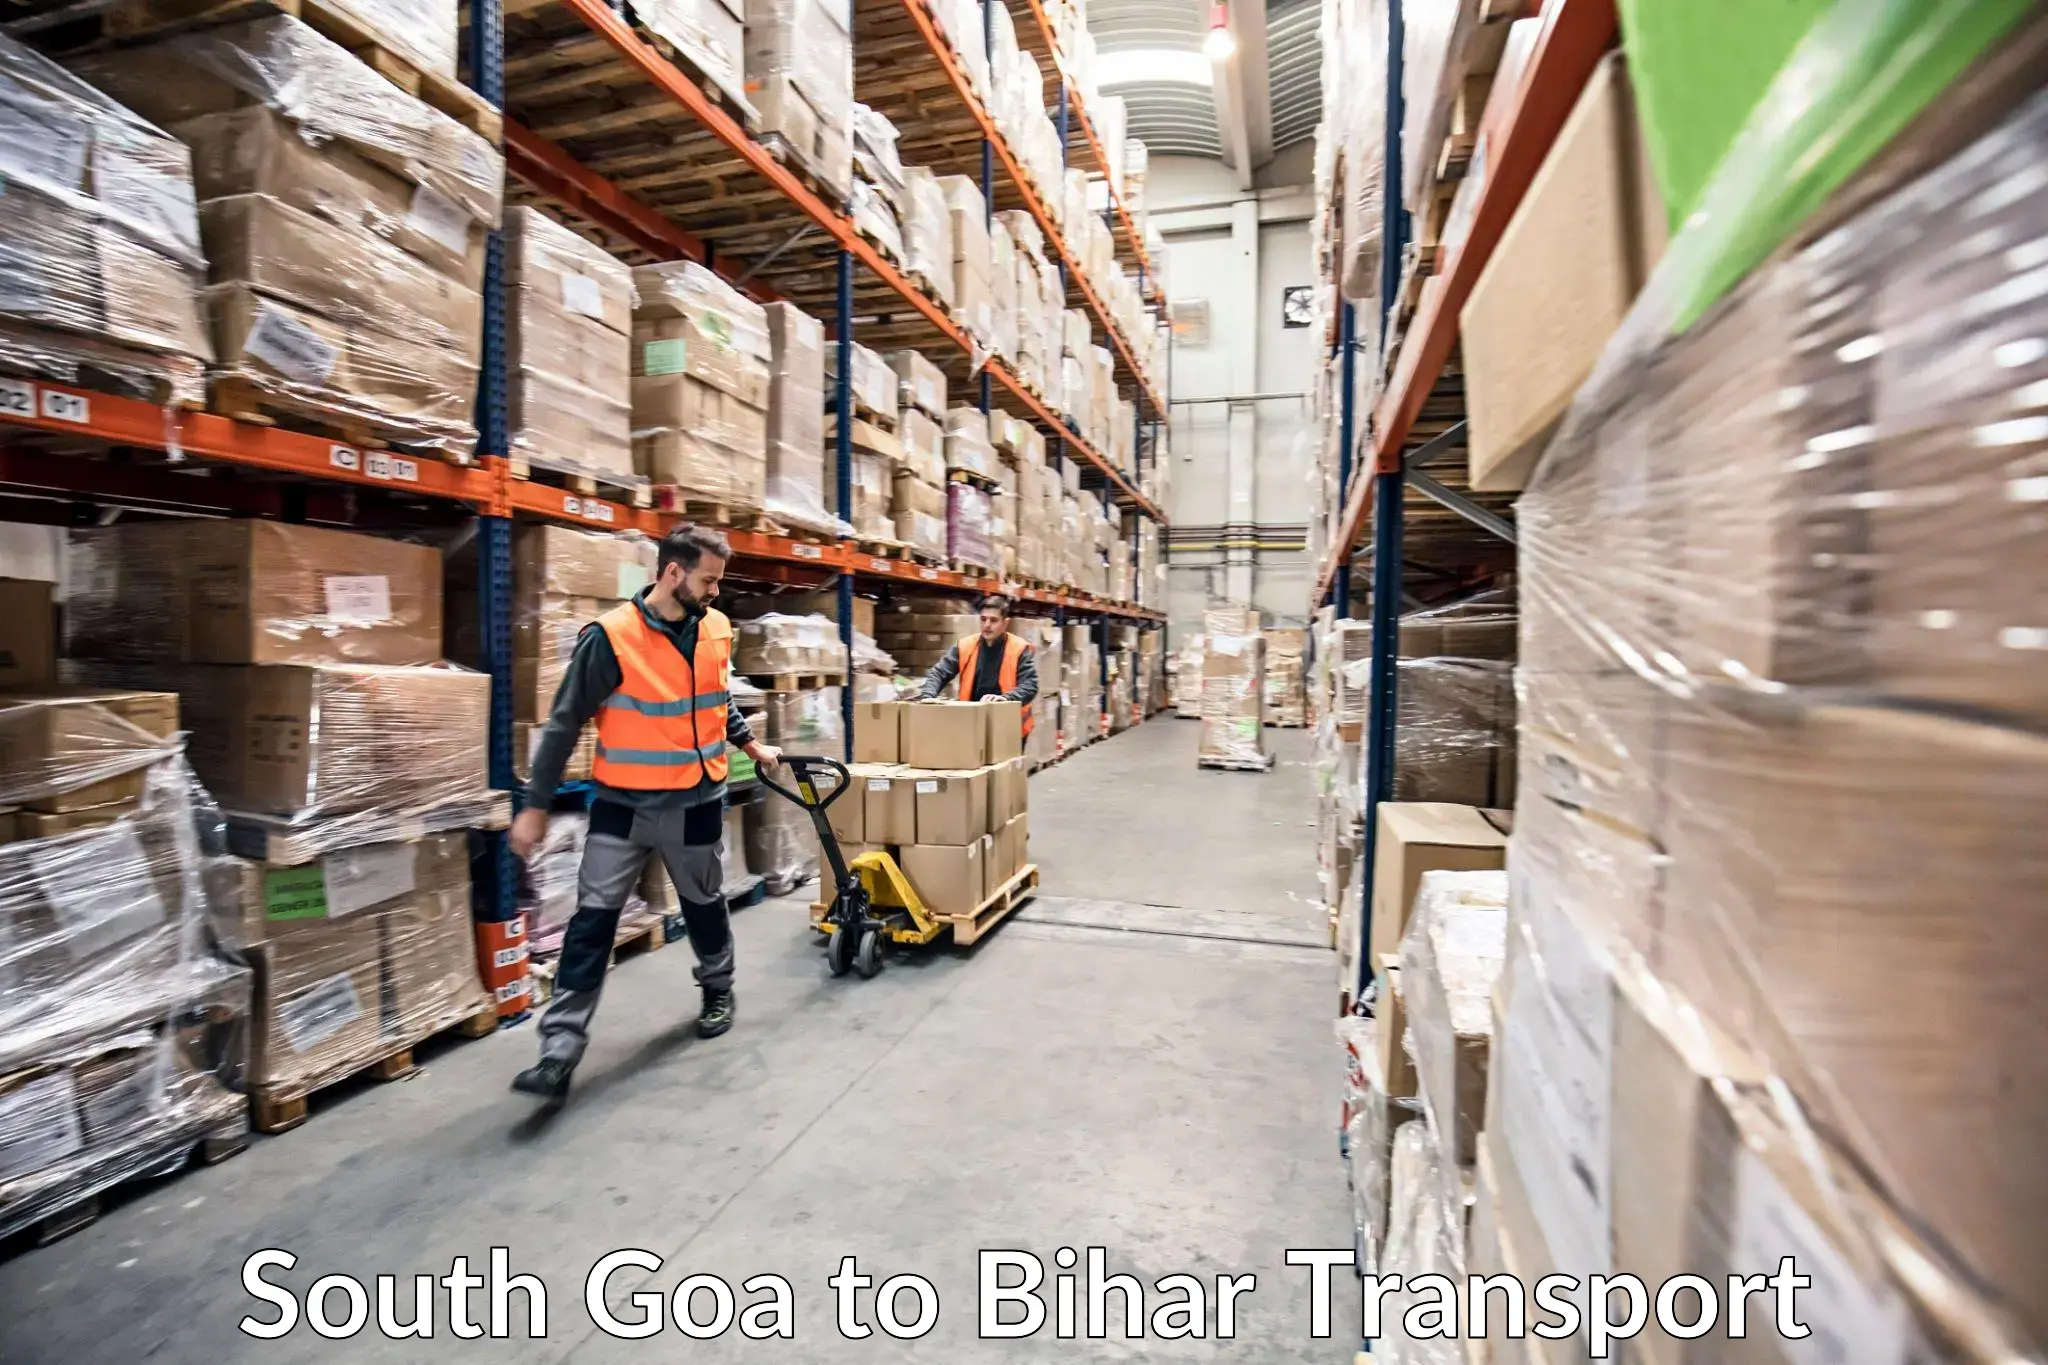 Logistics transportation services South Goa to Dighwara